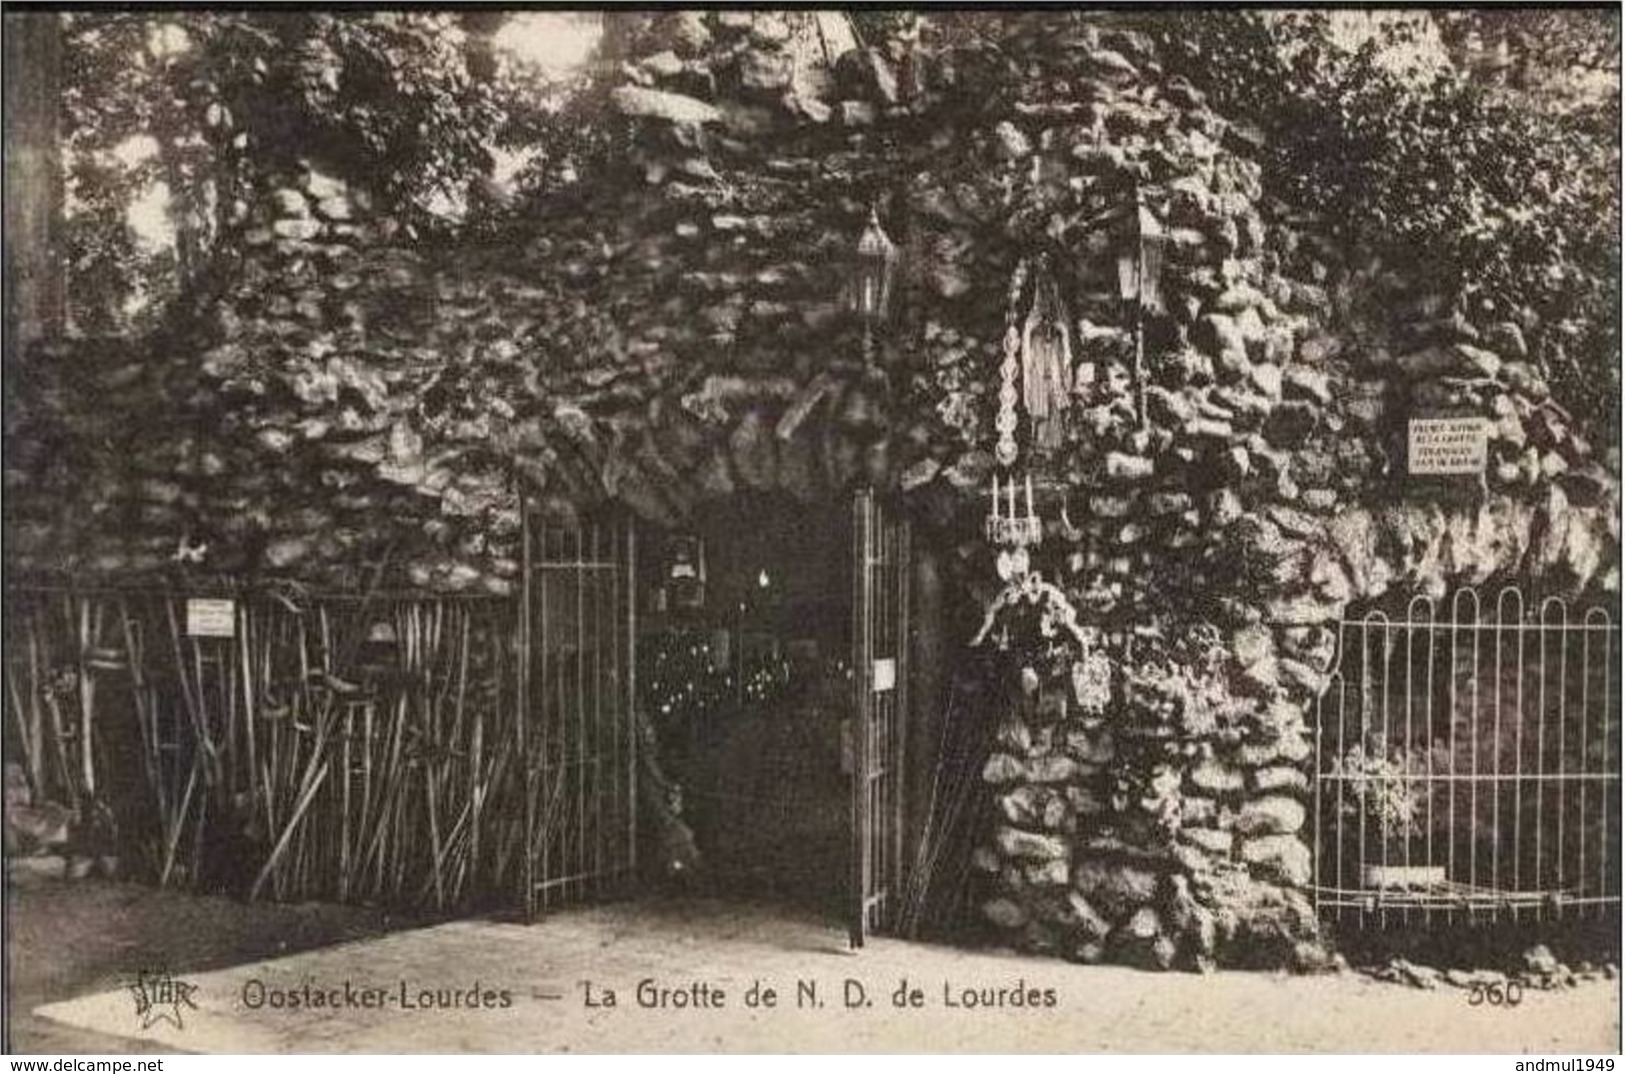 OOSTAKKER-OOSTACKER-LOURD ES - La Grotte De N.-D. De Lourdes - Gent